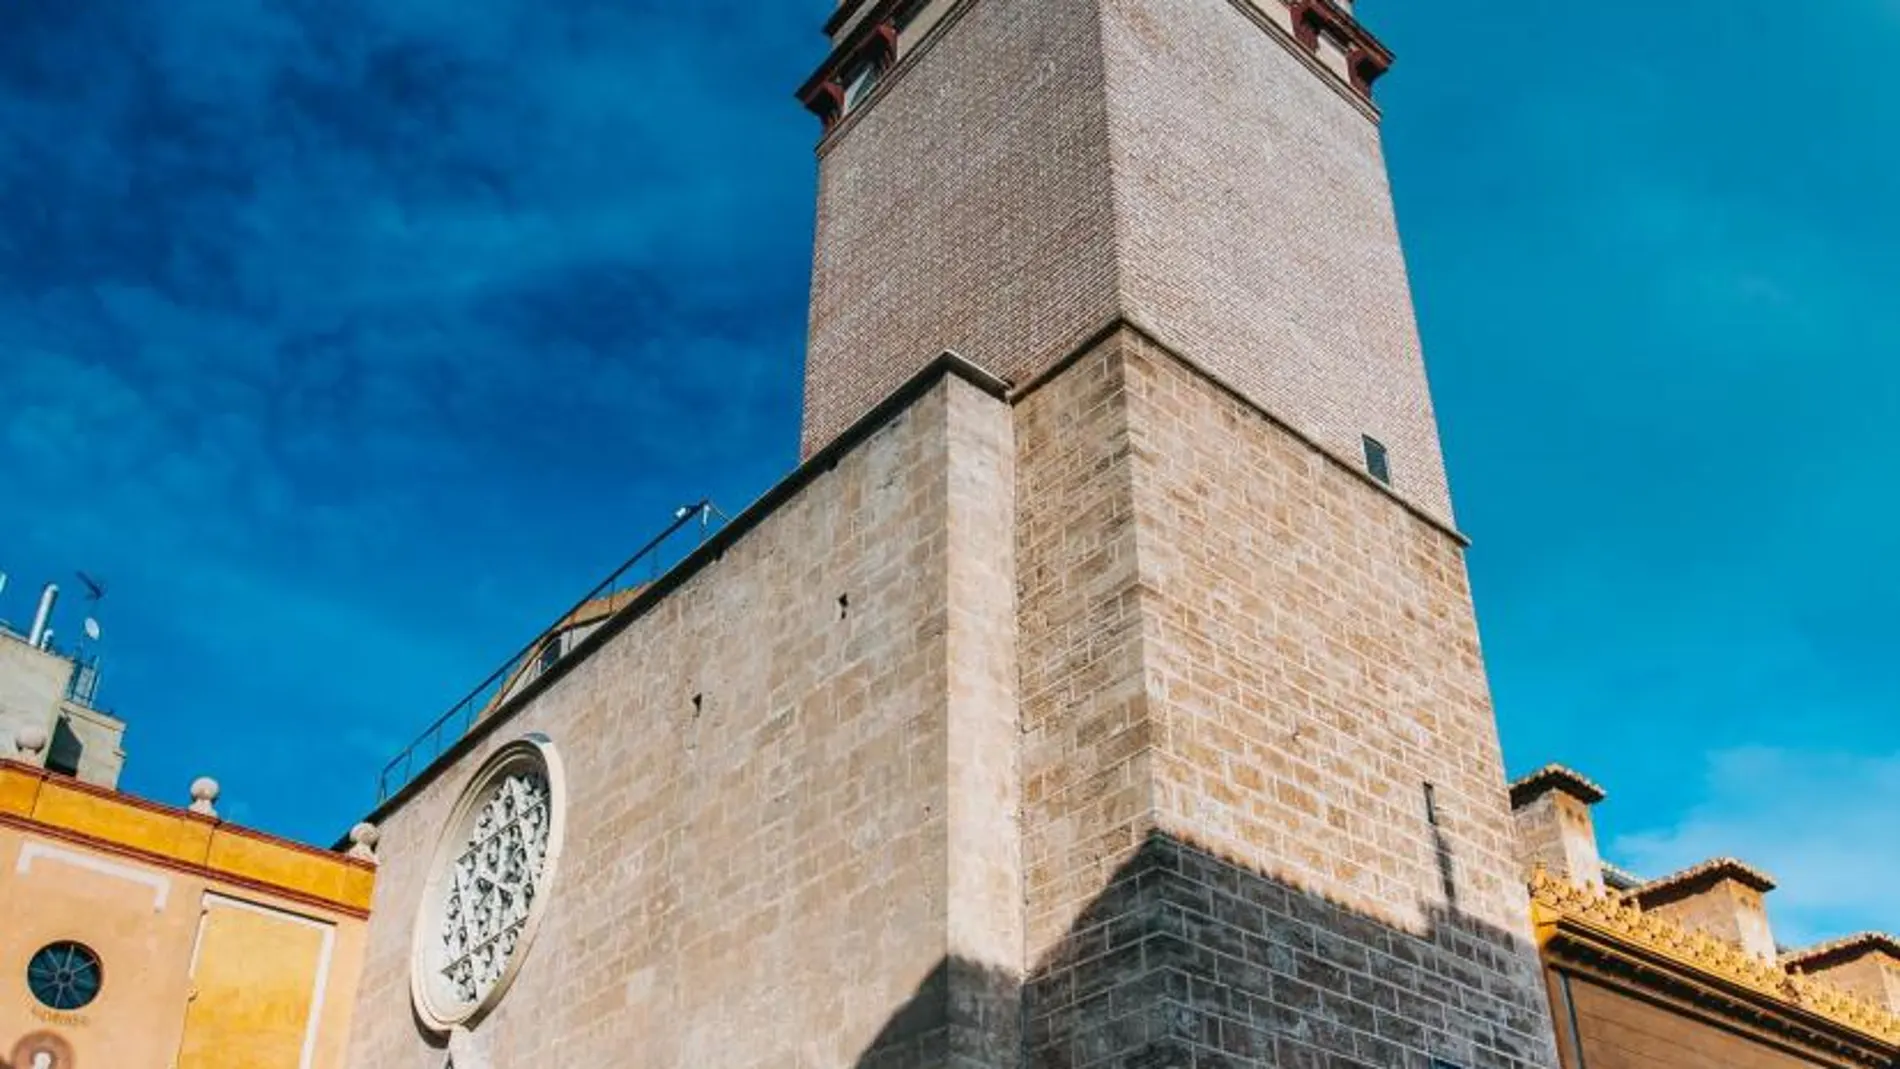 Imagen del campanario de la iglesia de San Nicolás, en el barrio del Carmen